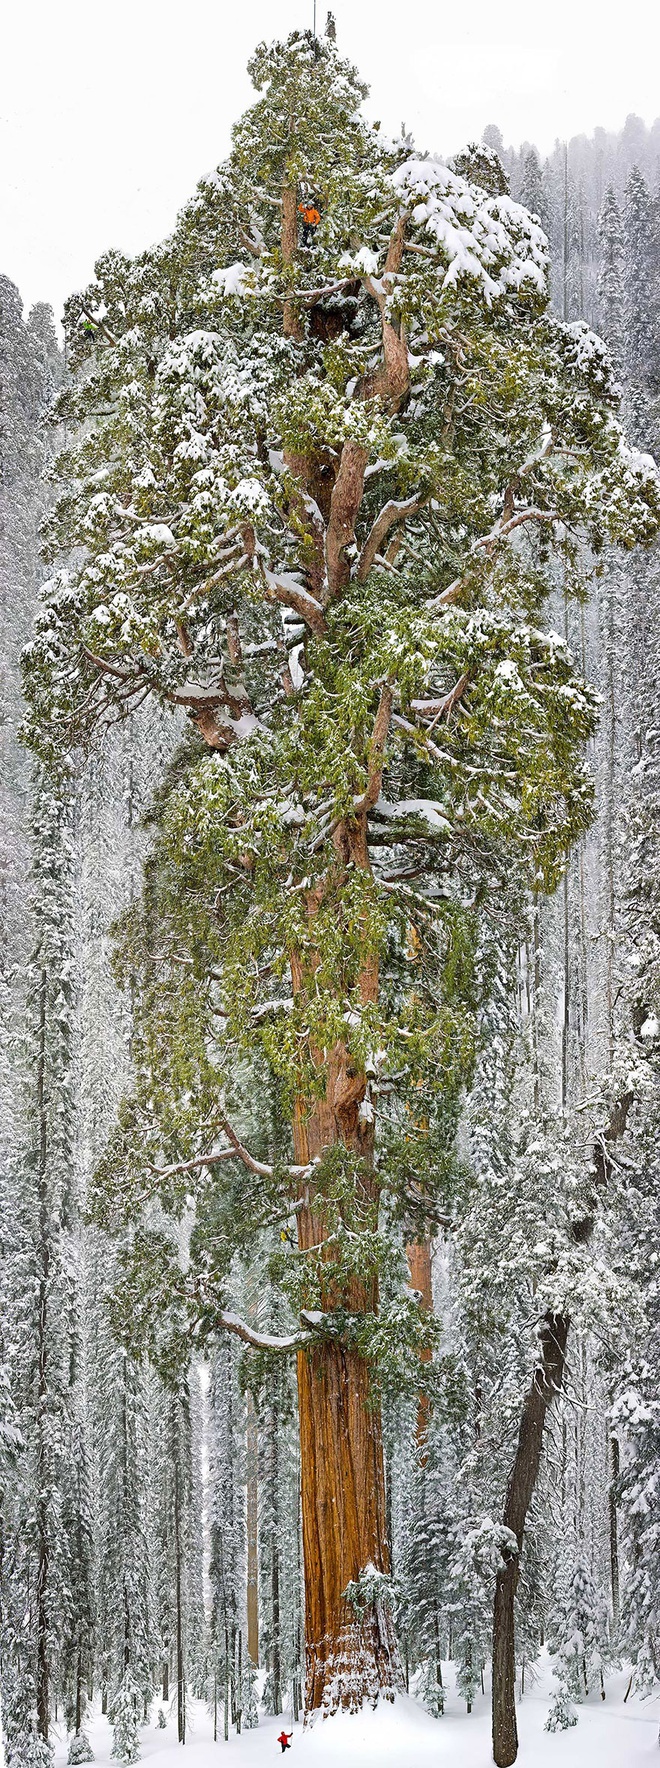 
Đây là cái cây lớn thứ 3 thế giới, nó là cây củ tùng, hiện đang ở California
